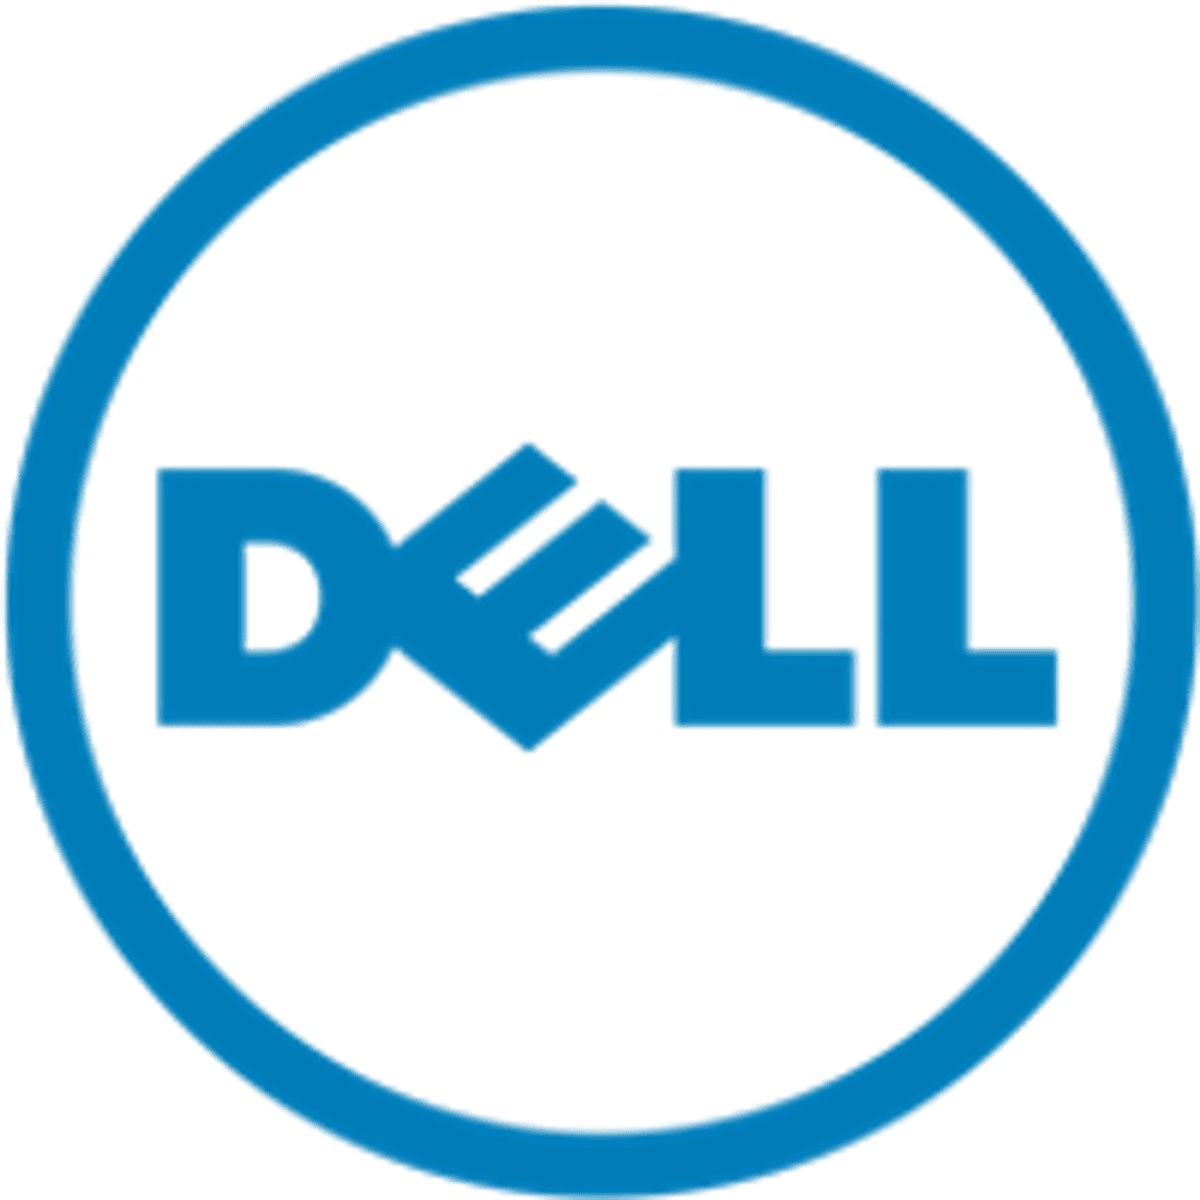 Belegger verzet zich tegen beursplannen Dell image